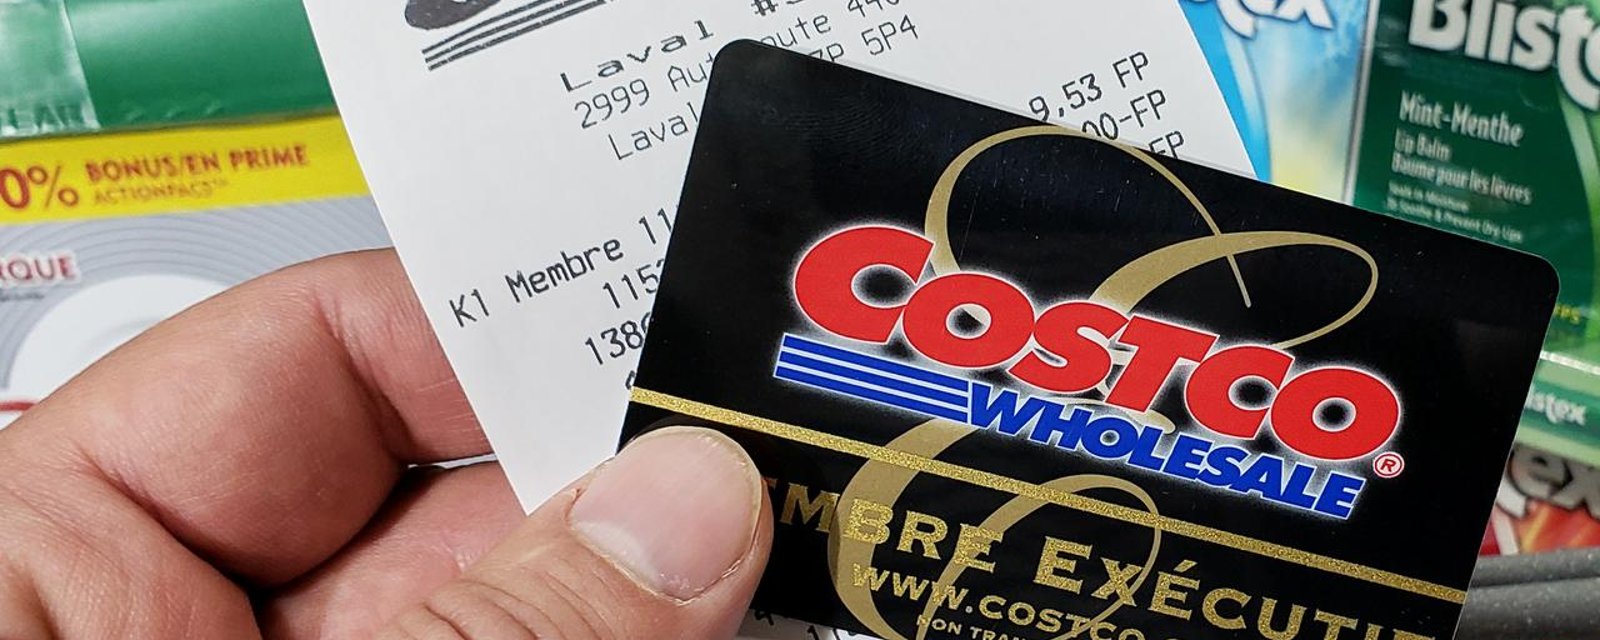 Voici comment vous et un ami pourriez recevoir chacun une carte cadeau Costco de 50$ 